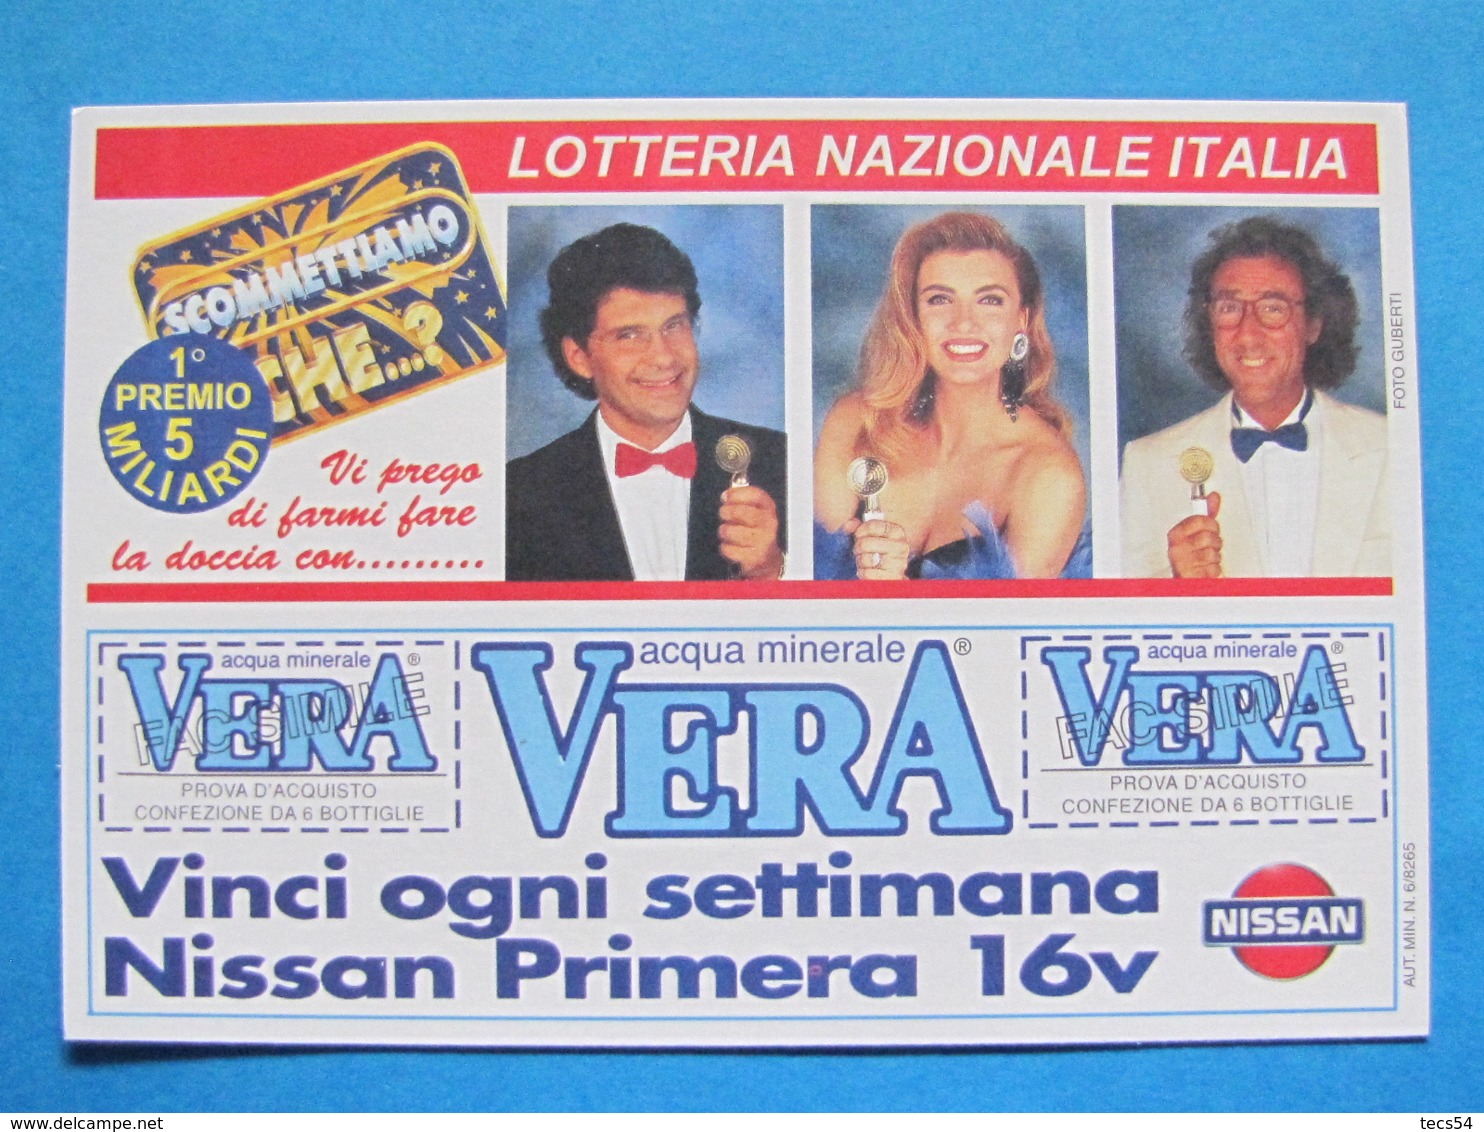 CARTOLINA LOTTERIA NAZIONALE ITALIA 1995 SCOMETTIAMO CHE ESTRAZIONE 1996 - Biglietti Della Lotteria